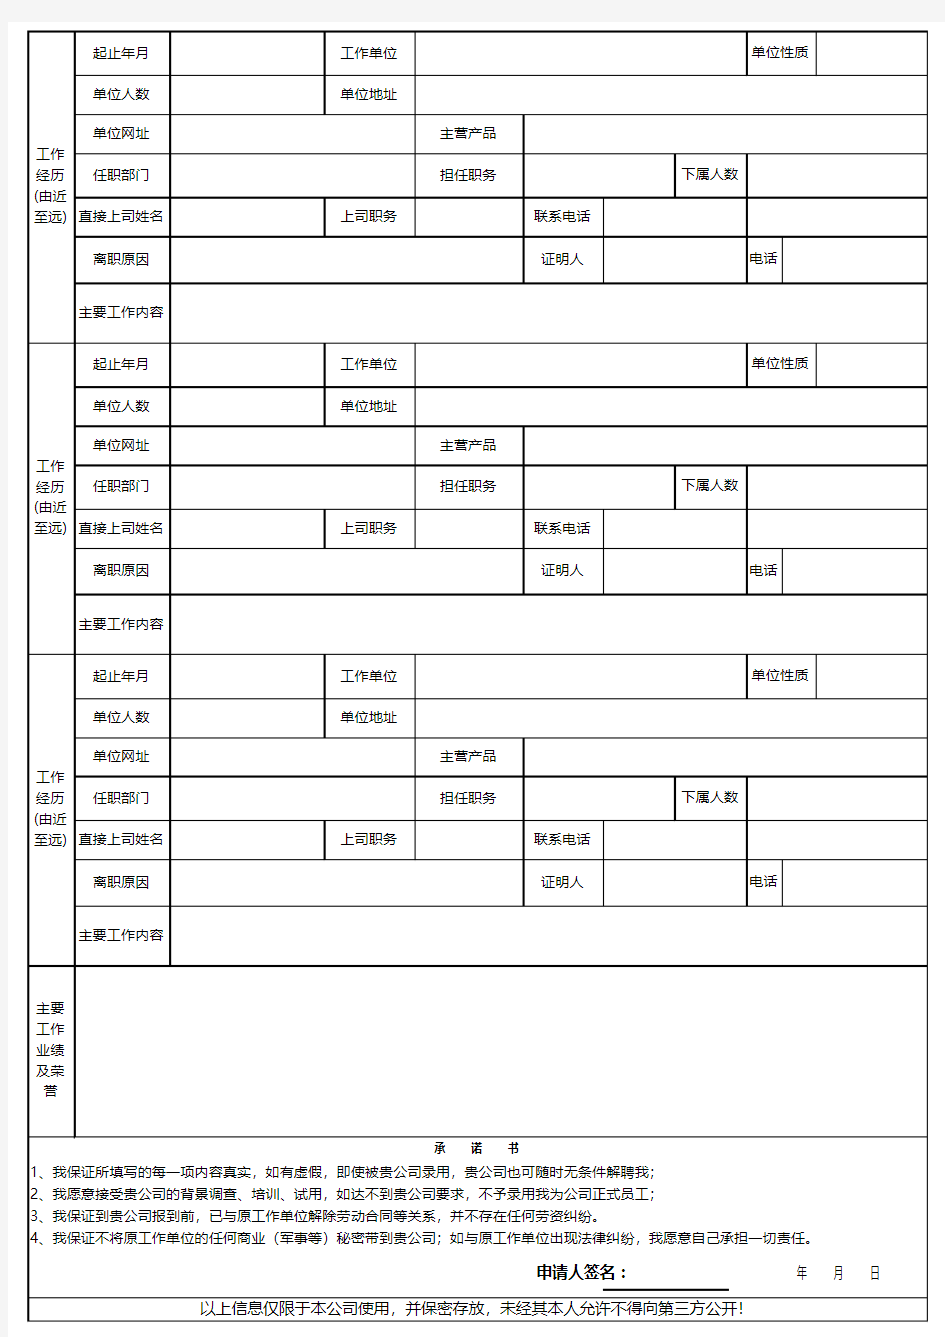 员工档案管理系统Excel模板